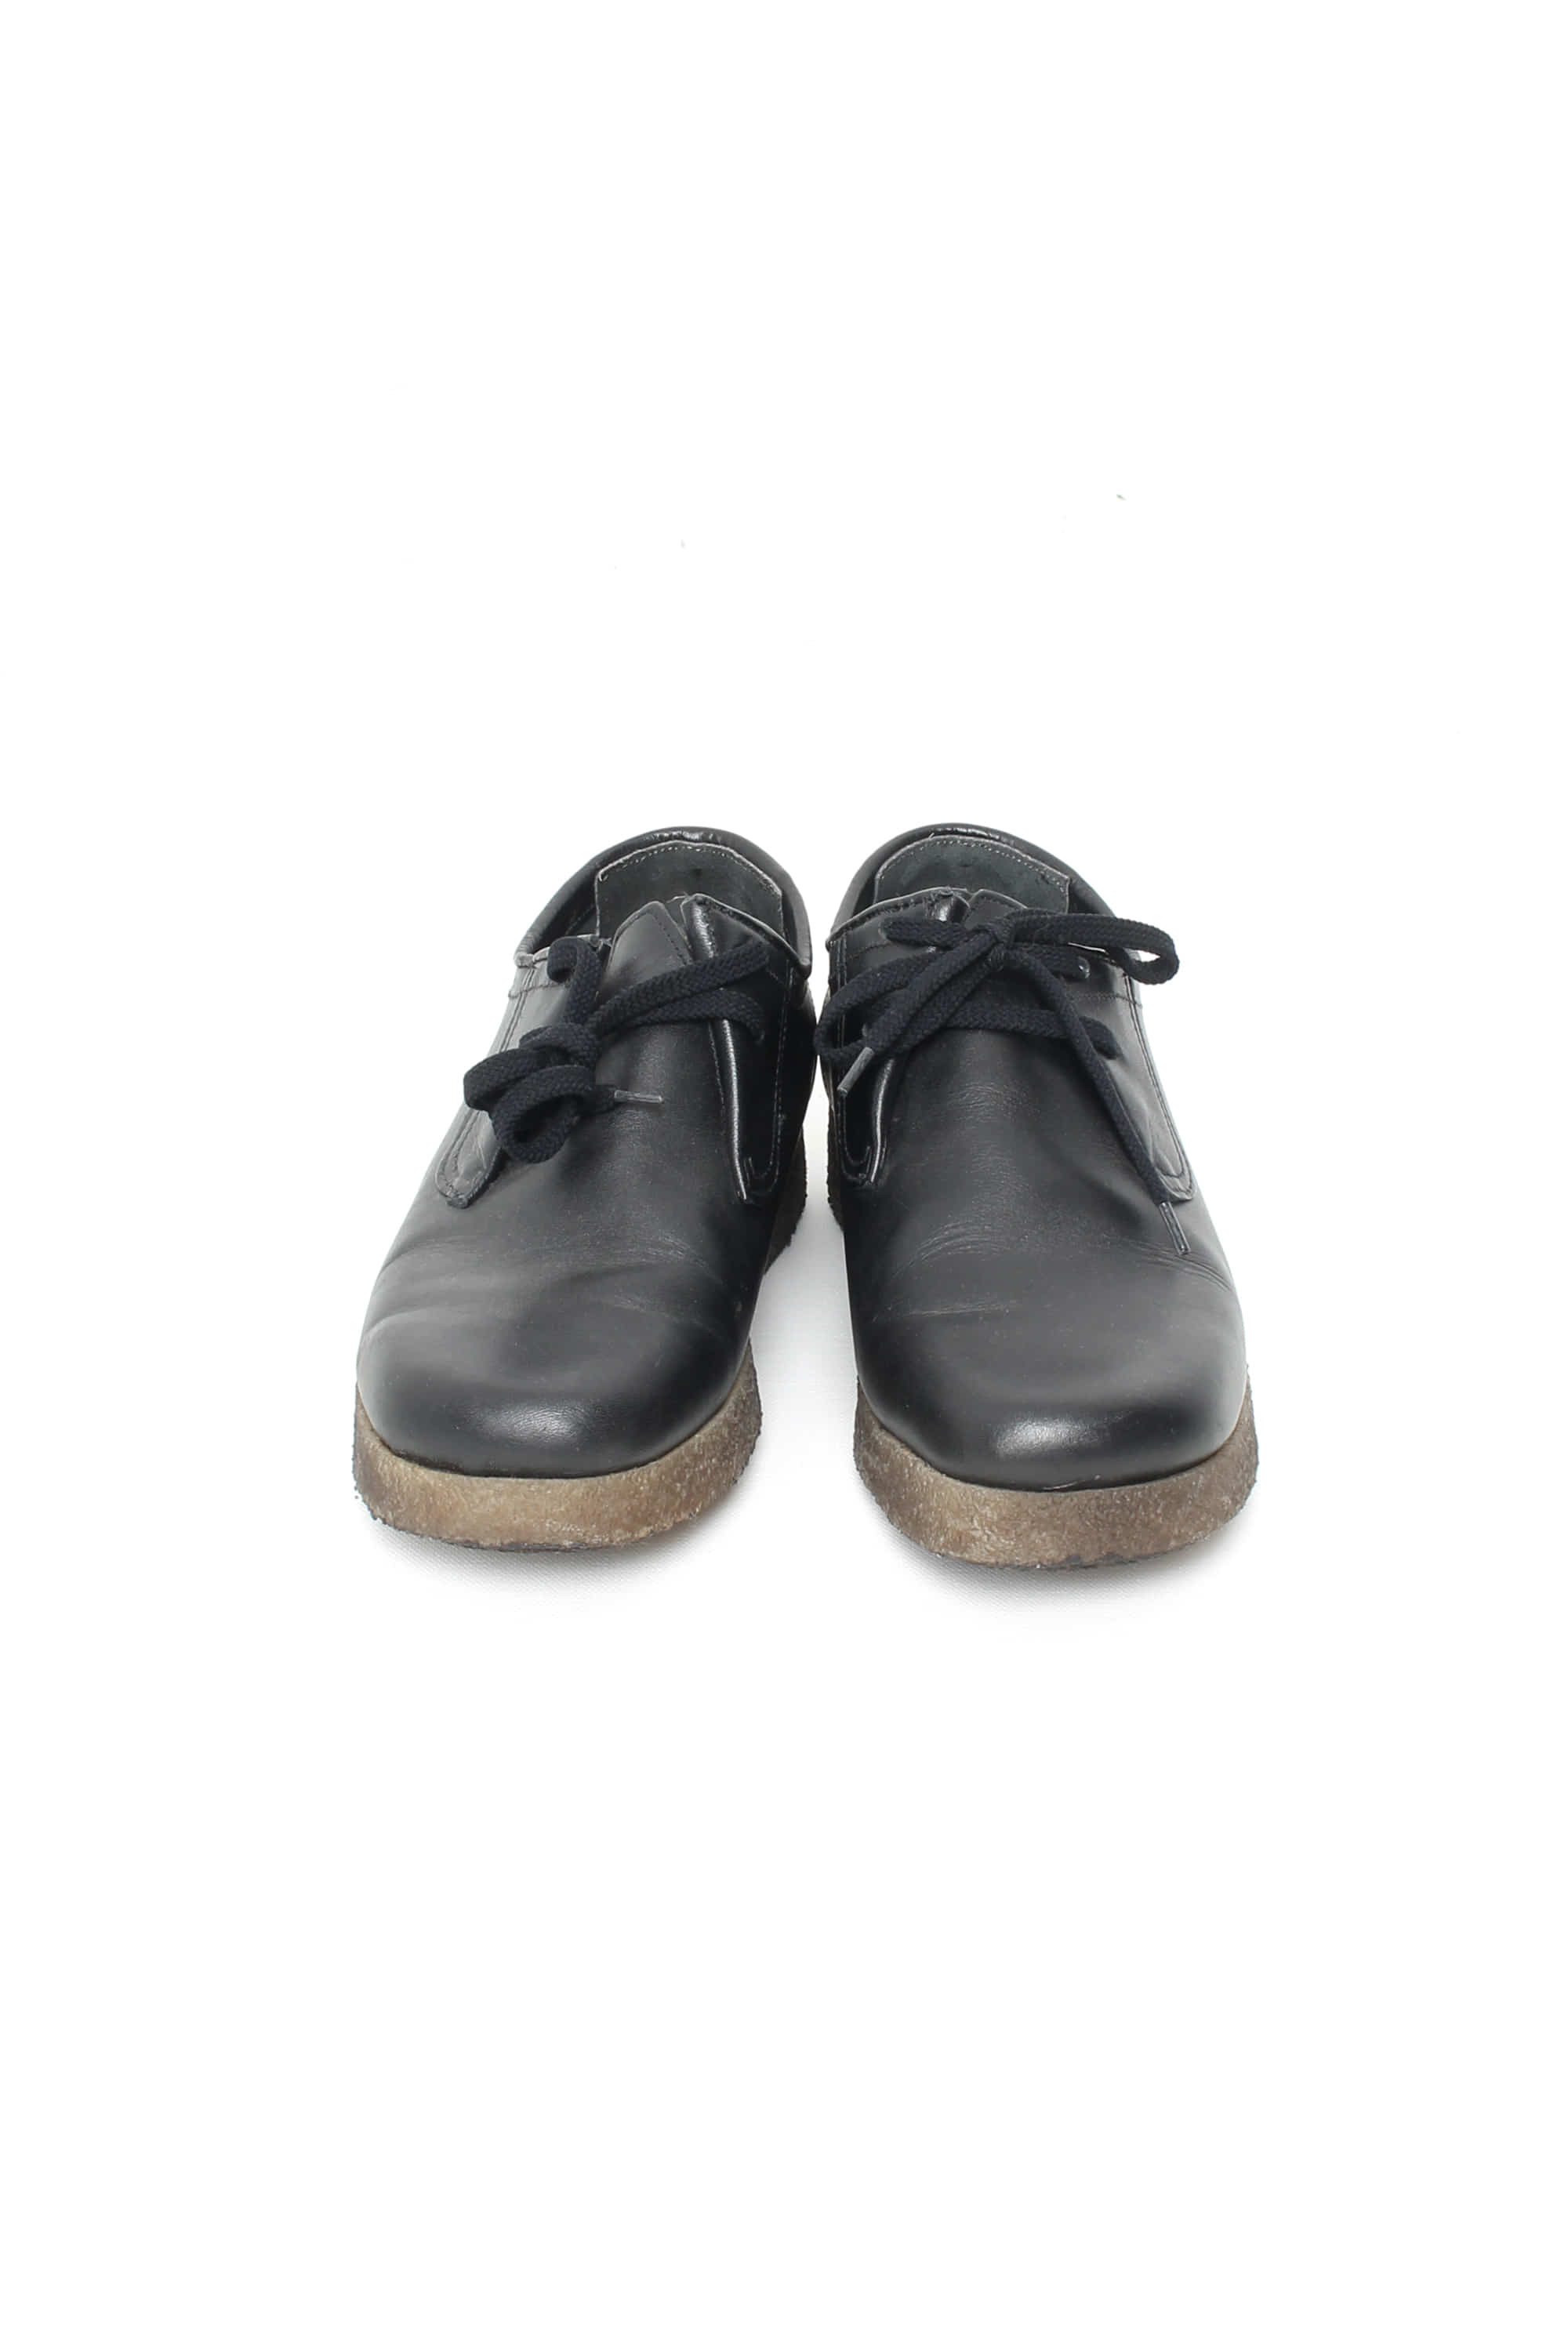 SUPREME x CLARKS Low cut Shoes(US5)